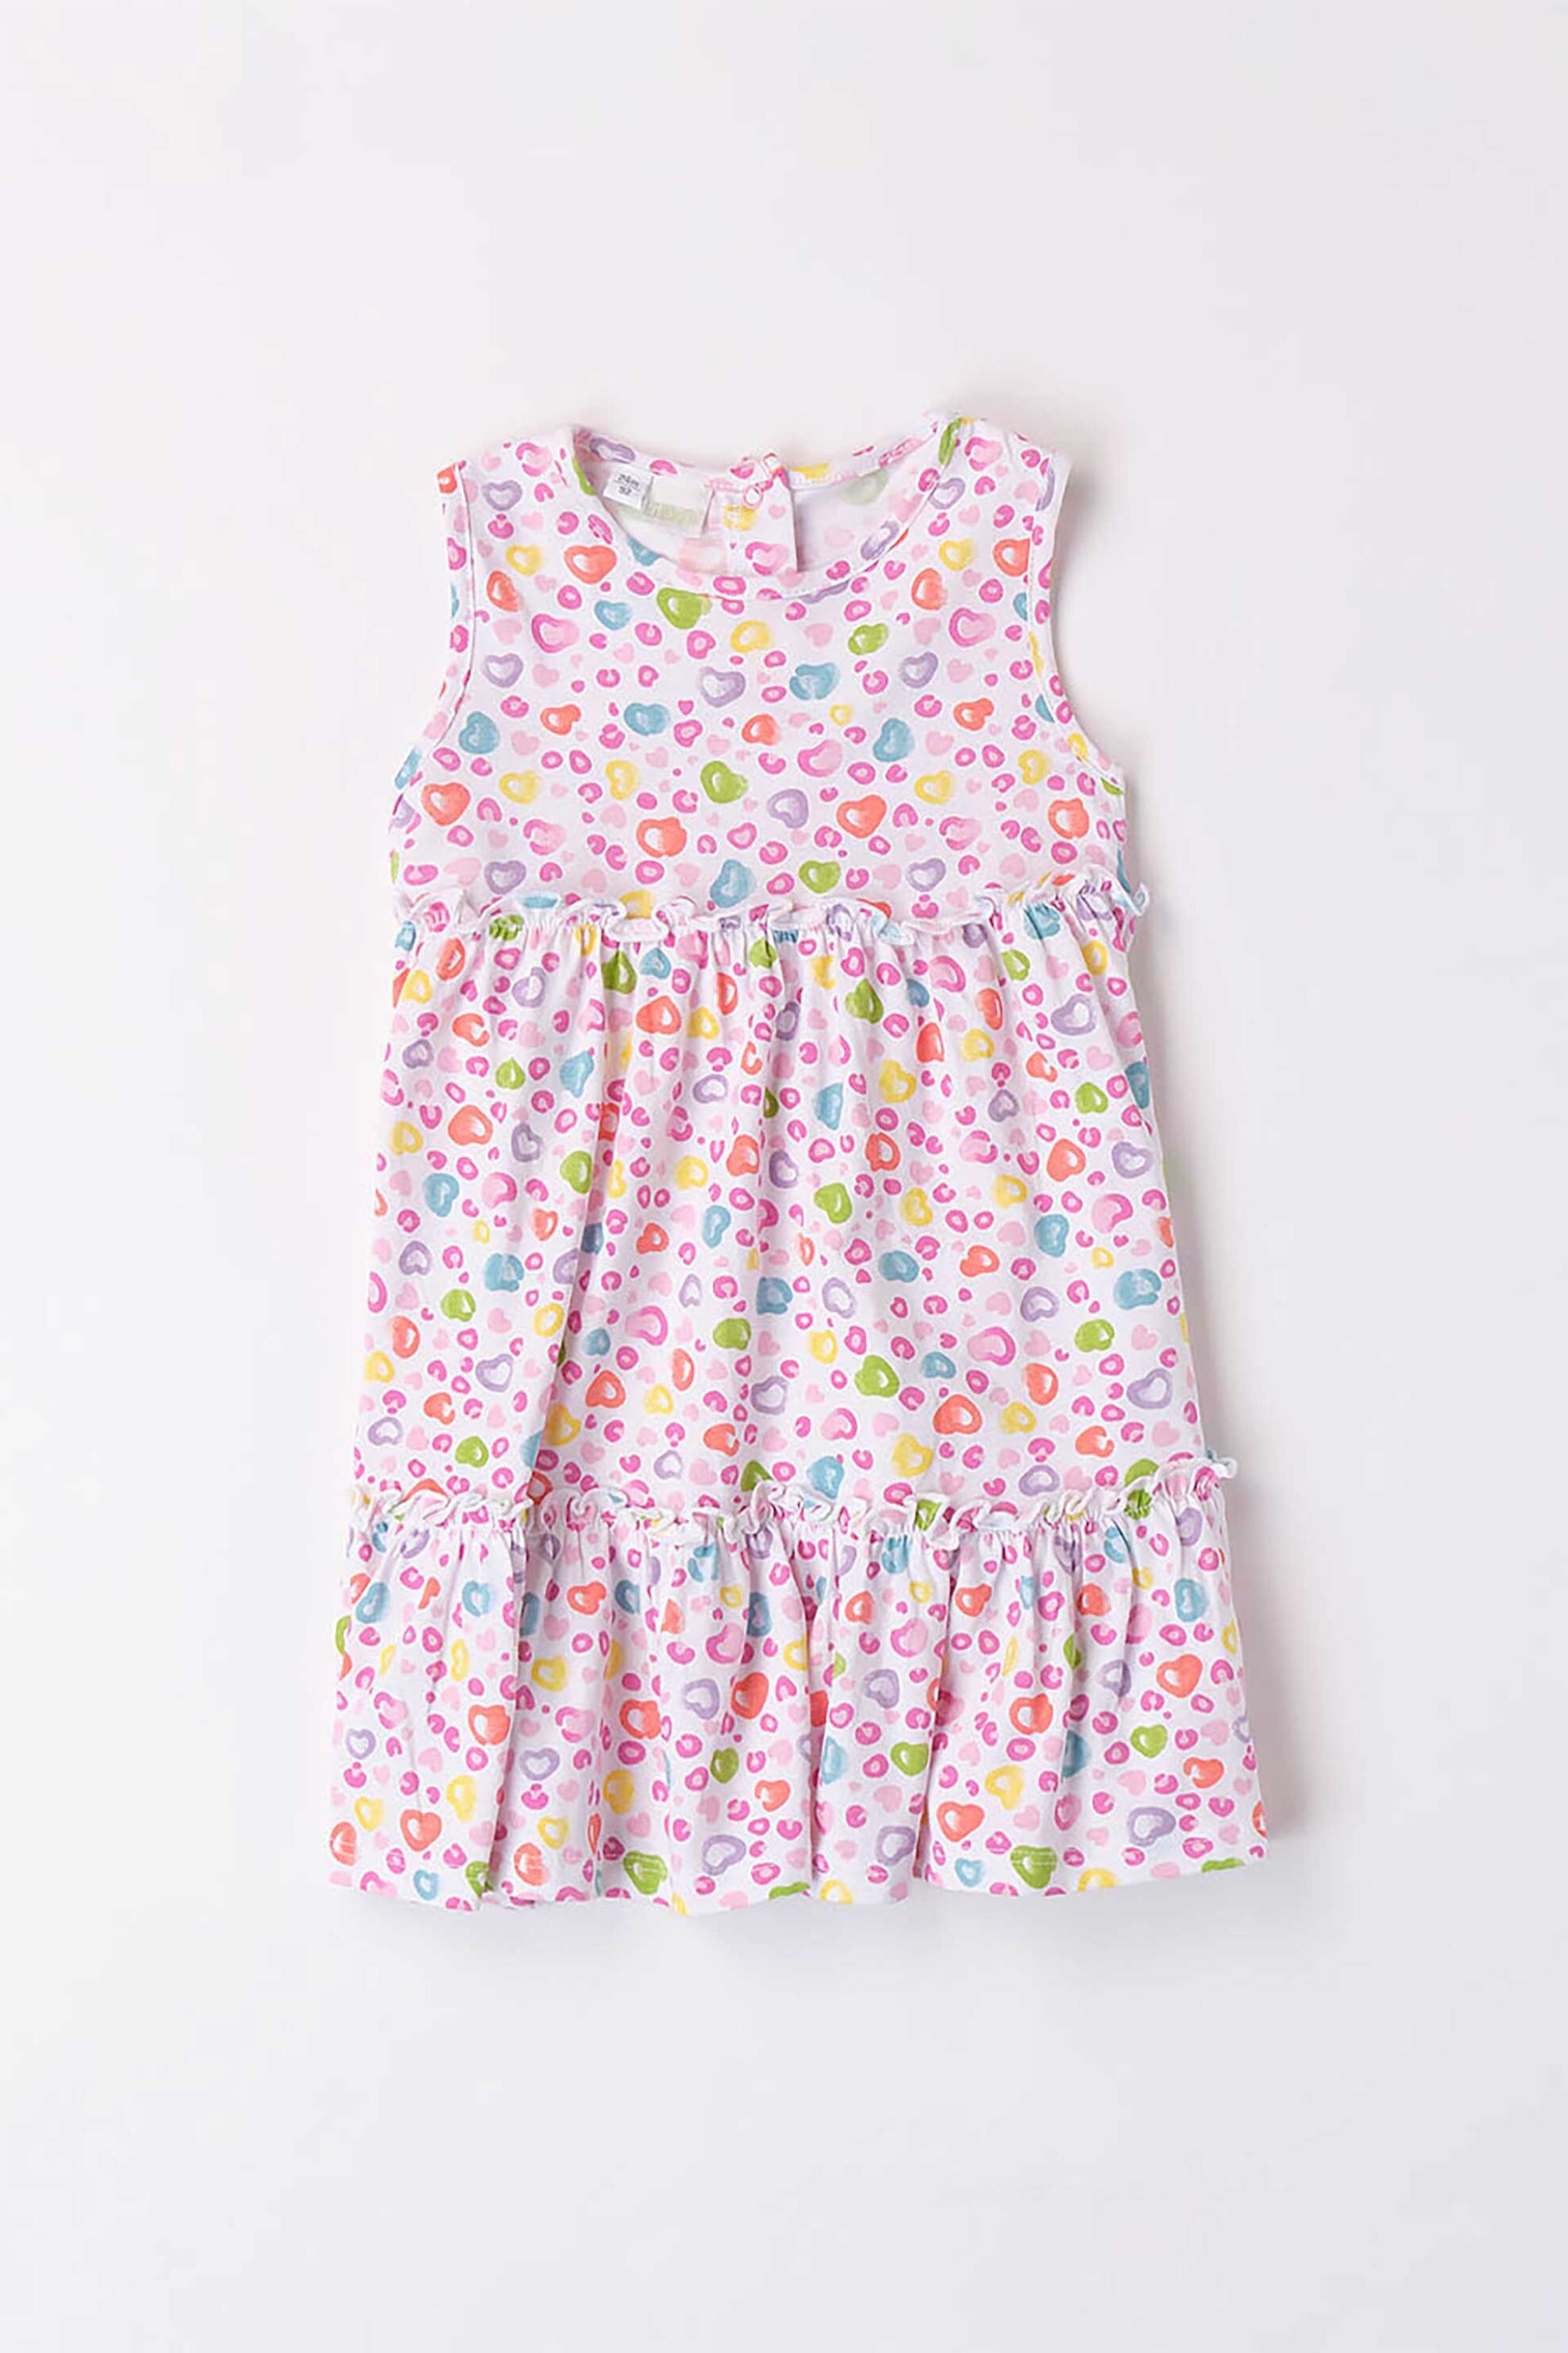 Παιδικά Ρούχα, Παπούτσια & Παιχνίδια > Βρεφικά για Κορίτσια > Βρεφικά Ρούχα για Κορίτσι > Βρεφικά Φορέματα & Φούστες για Κορίτσια I Do βρεφικό αμάνικο φόρεμα με all-over colourful heart pattern - 4.8638/00 Ροζ